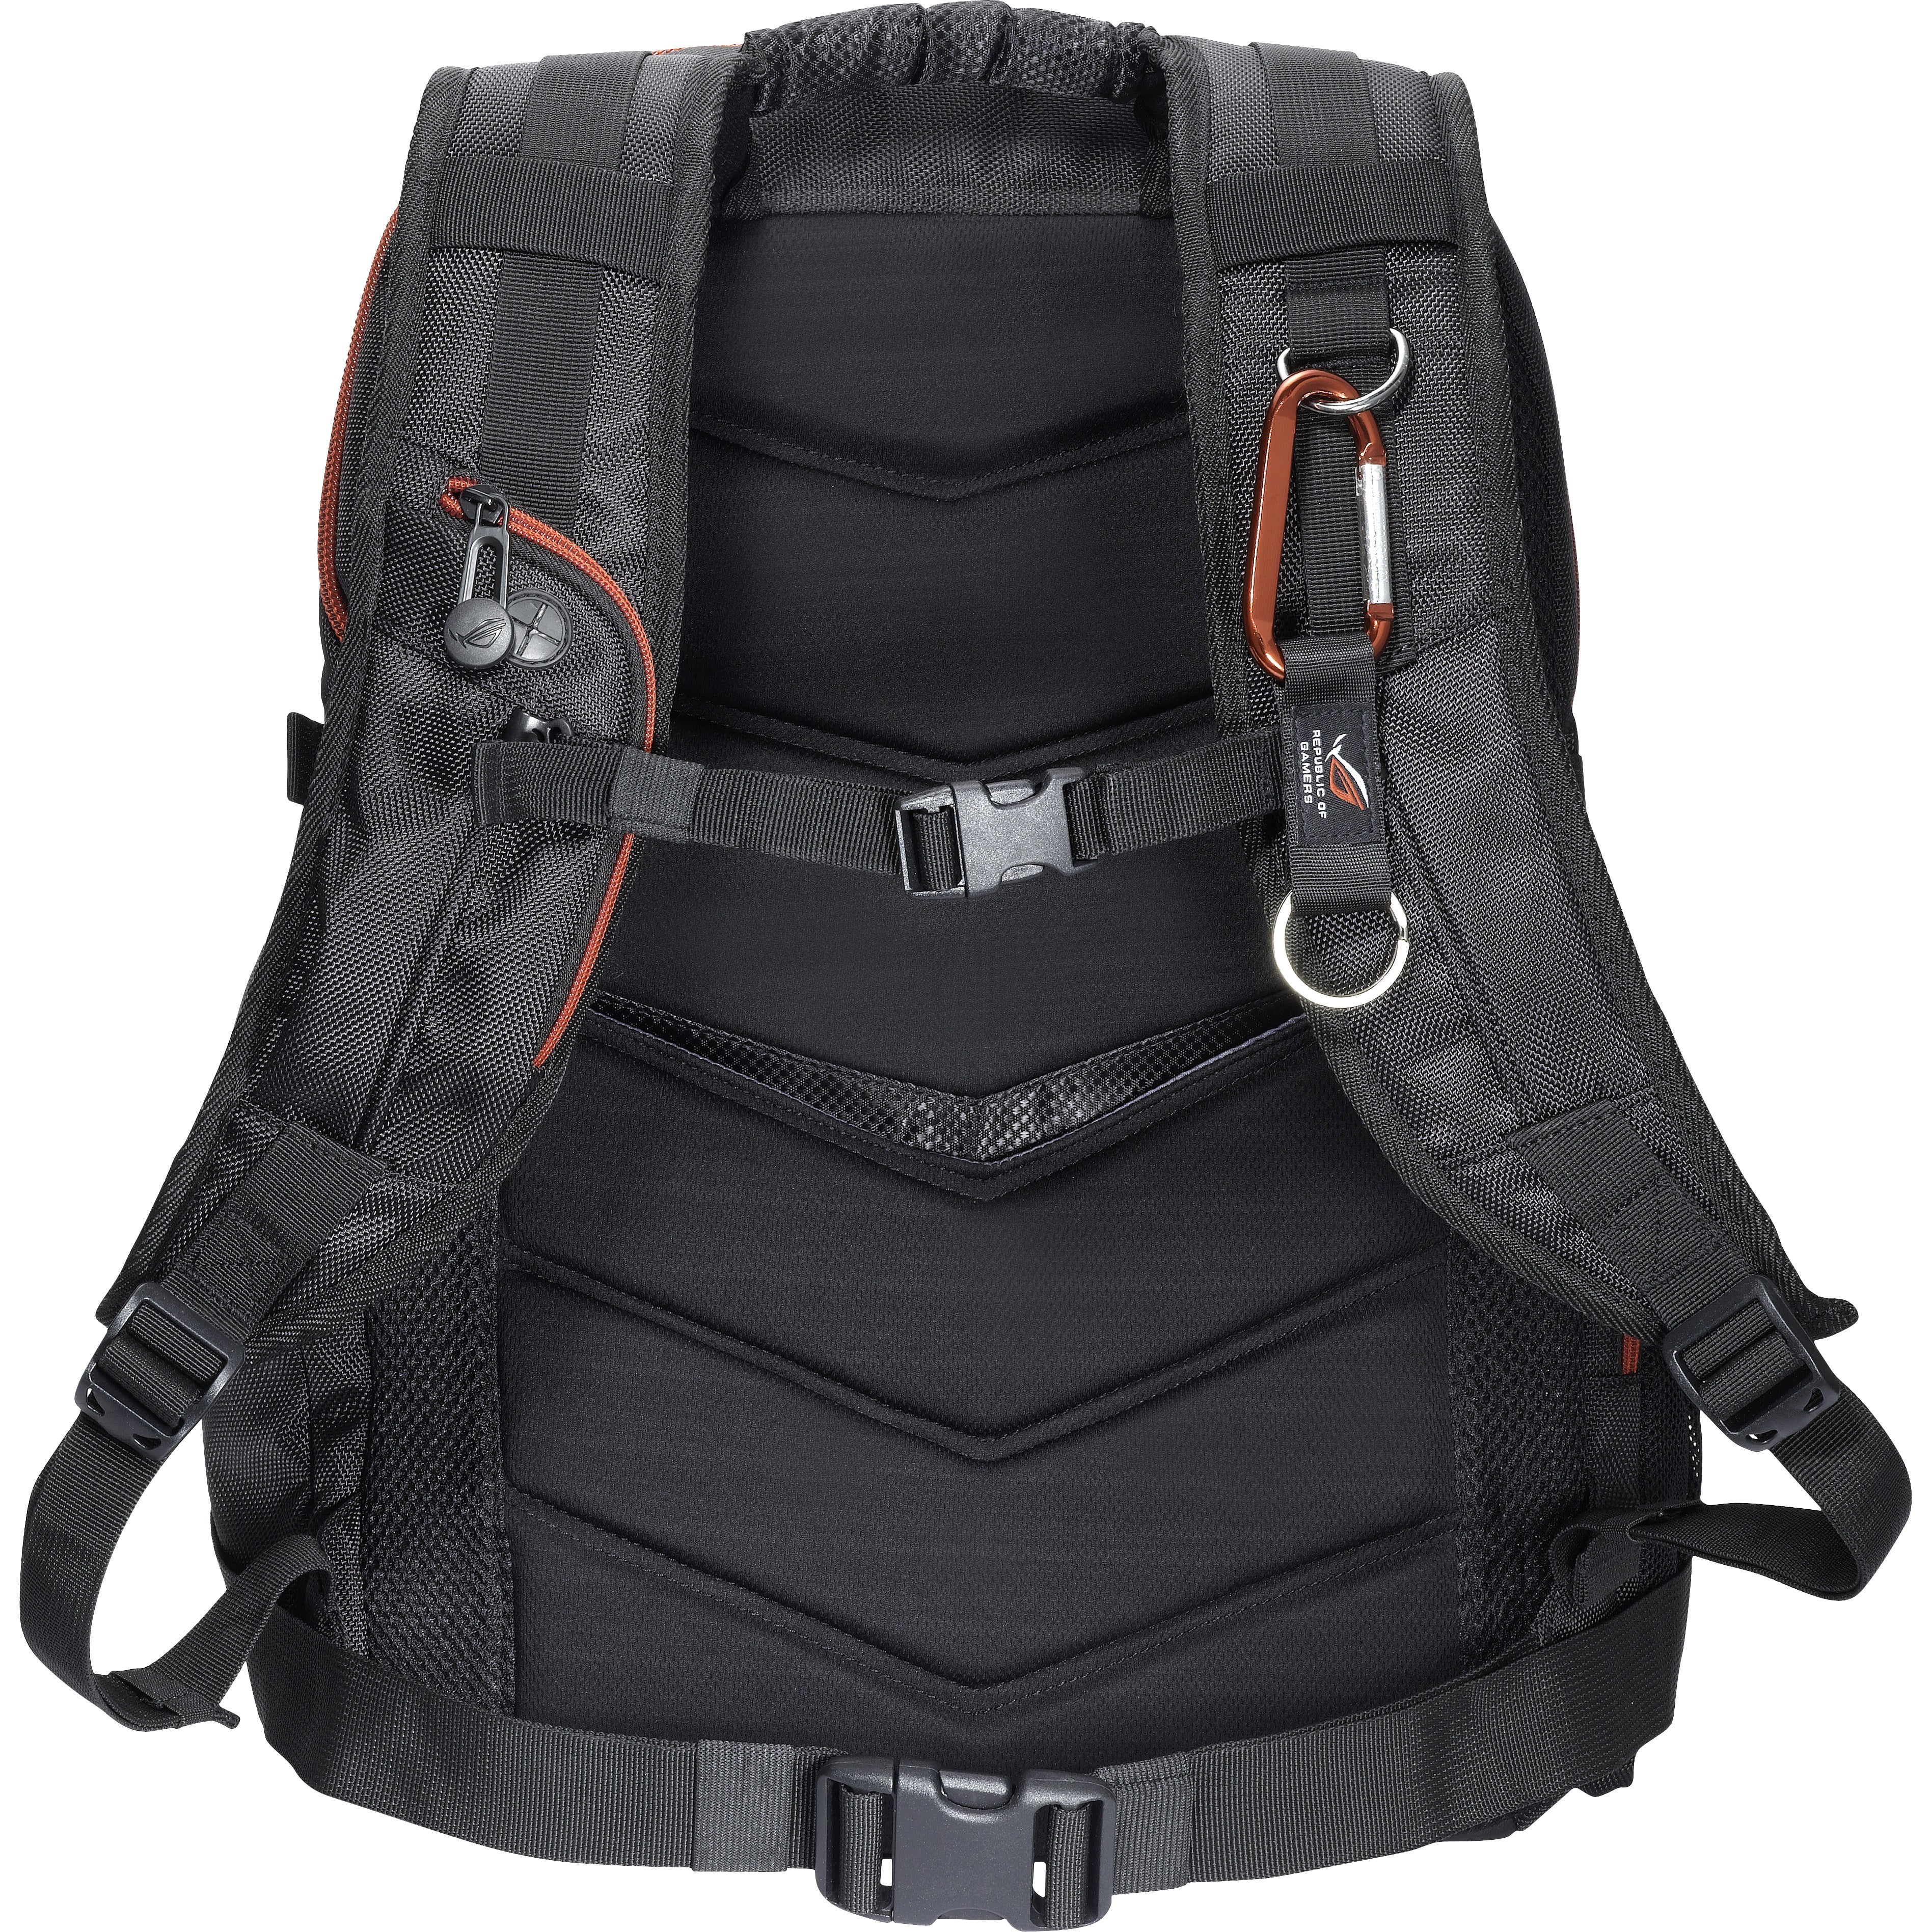 ASUS 17 inch ROG Backpack (Black) - Walmart.com